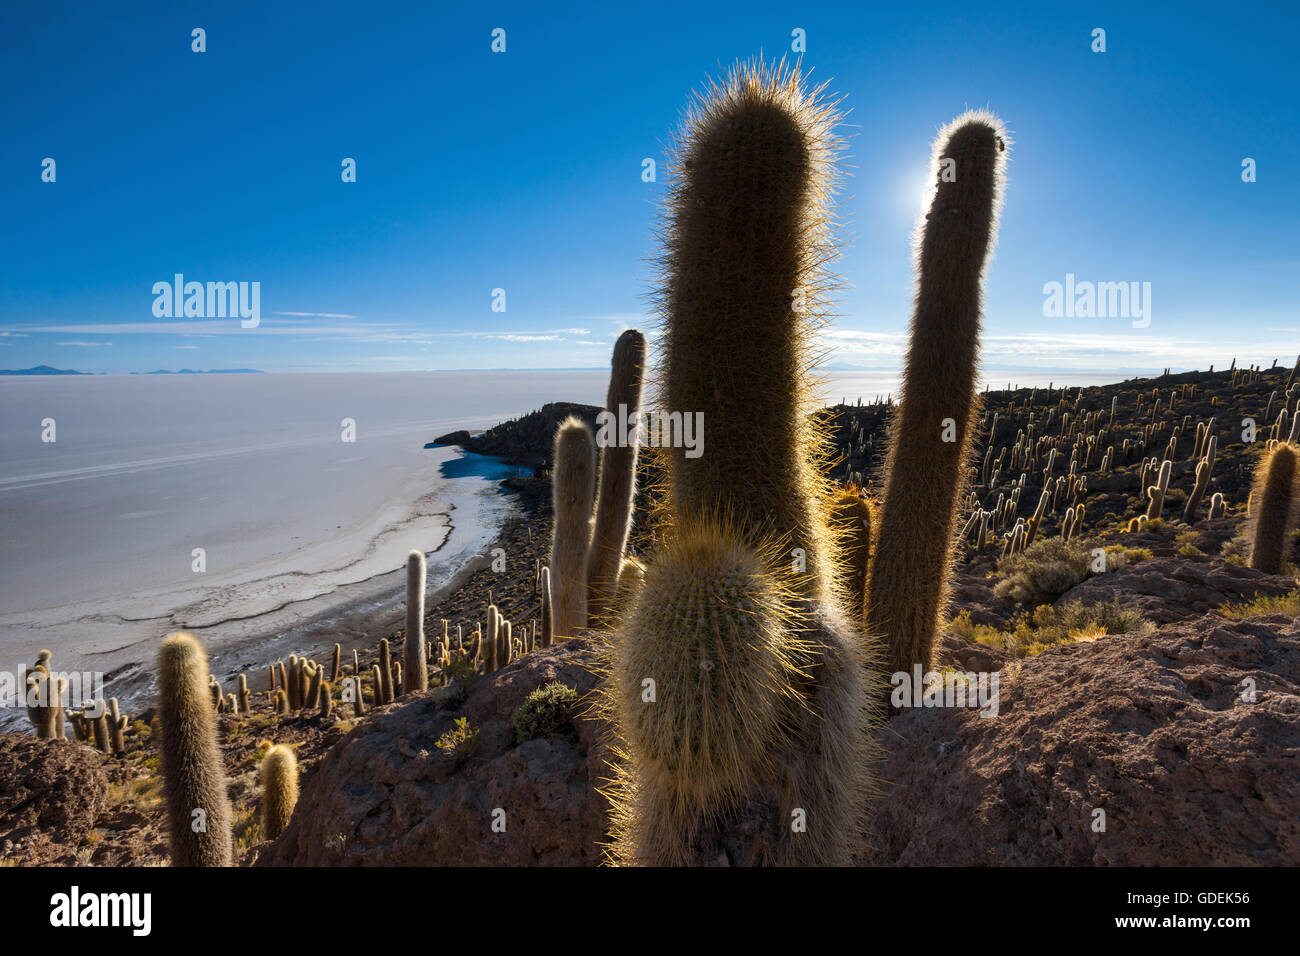 Los cactus,Bolivia,Altiplano Foto de stock